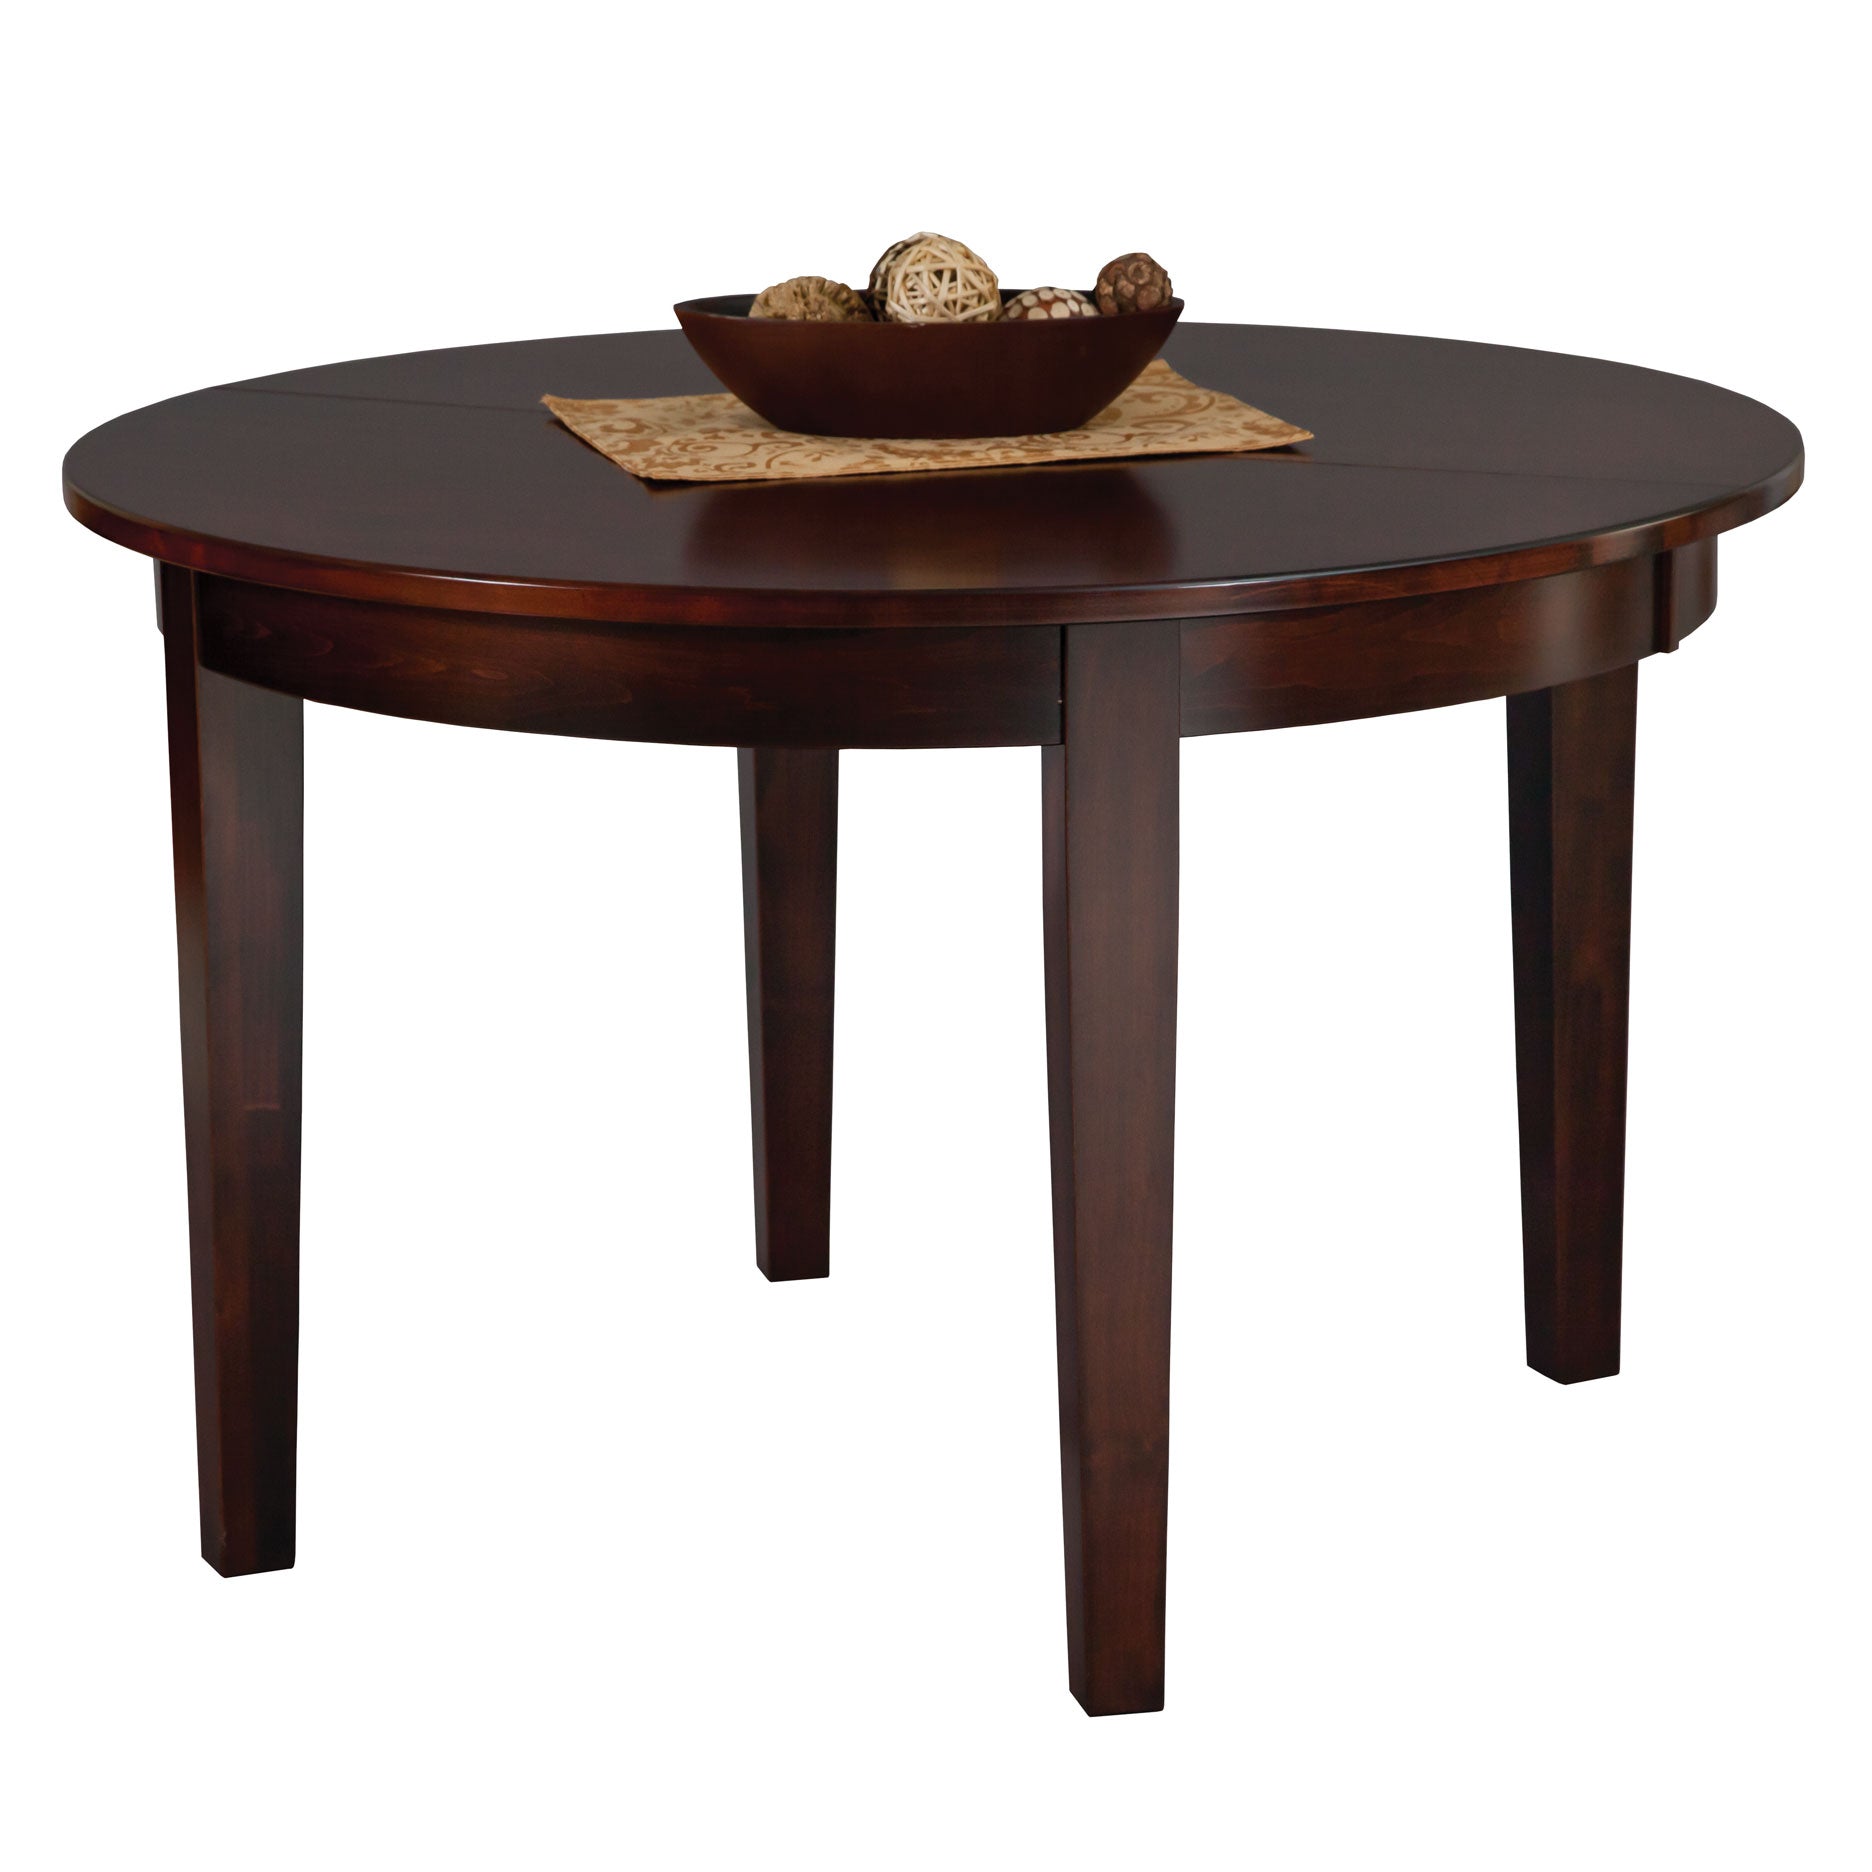 Warner Table - snyders.furniture